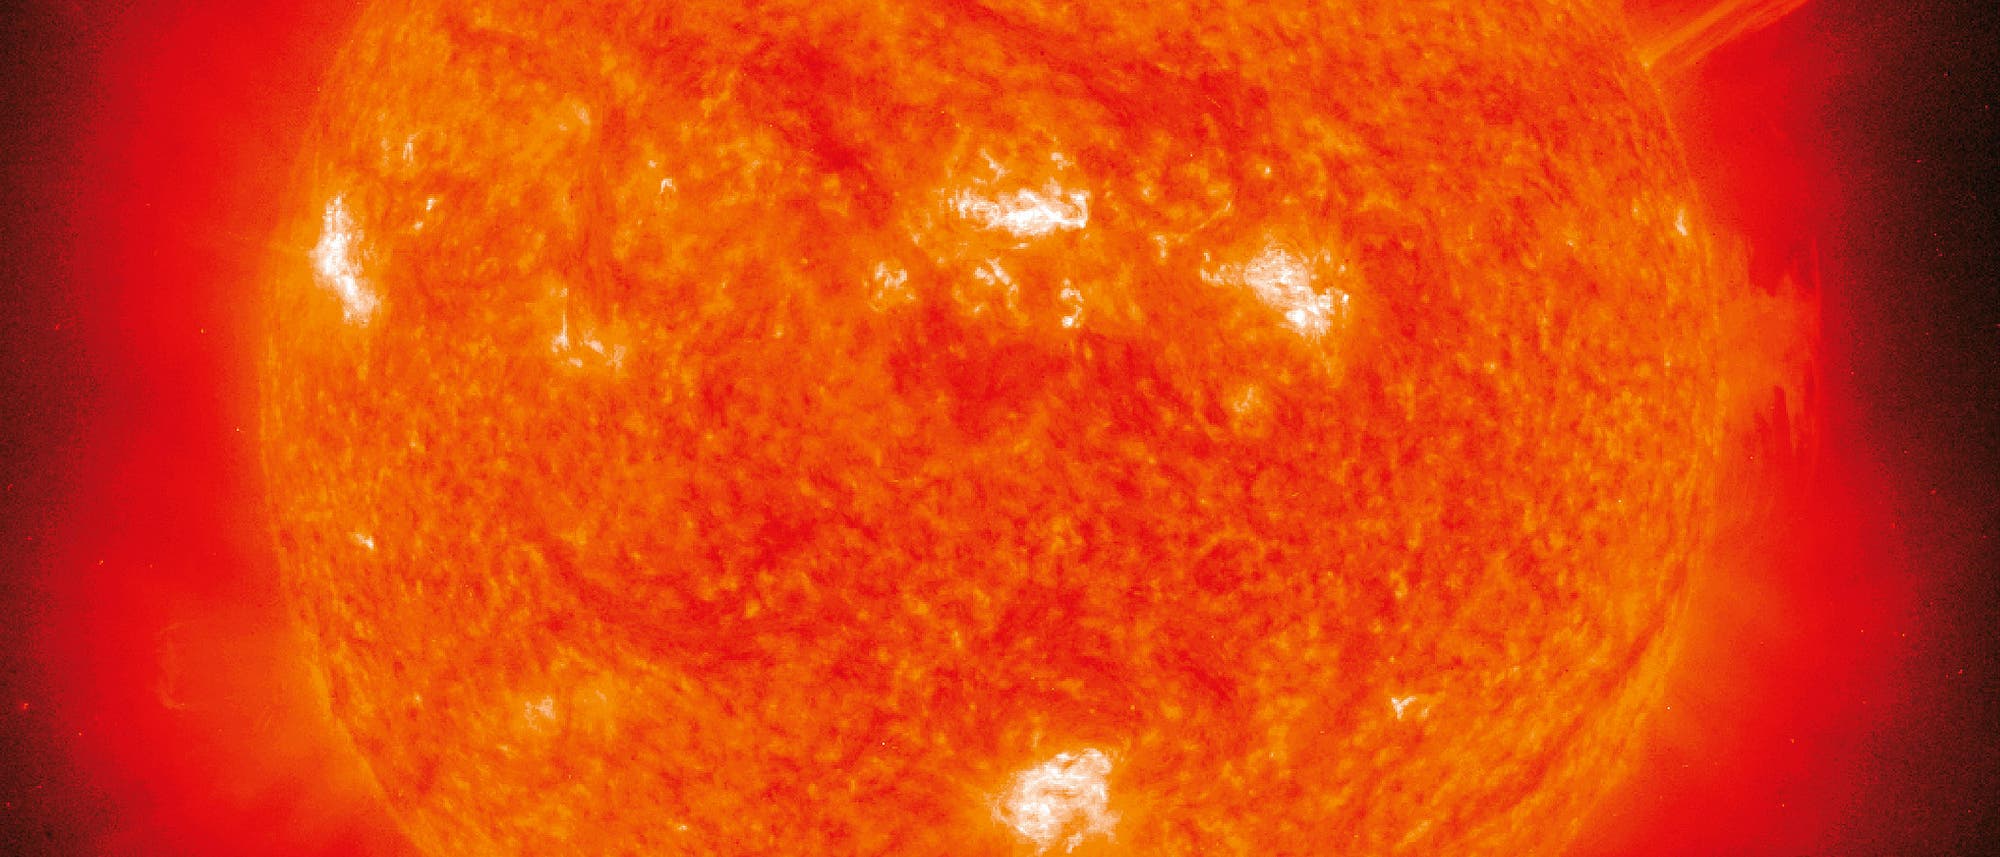 Eine Sonnenprotuberanz im ultravioletten Licht (SOHO-Aufnahme)